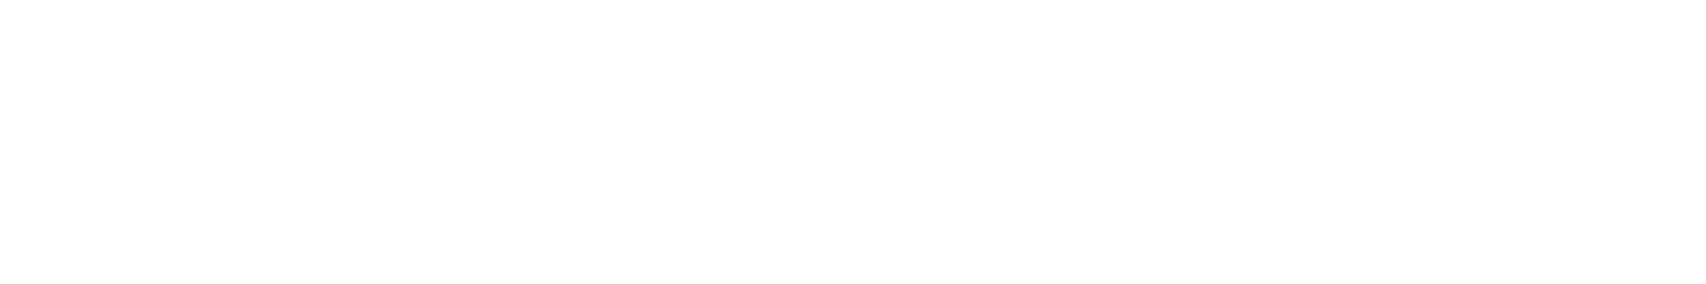 DSAWM Logo_Mark Left_White